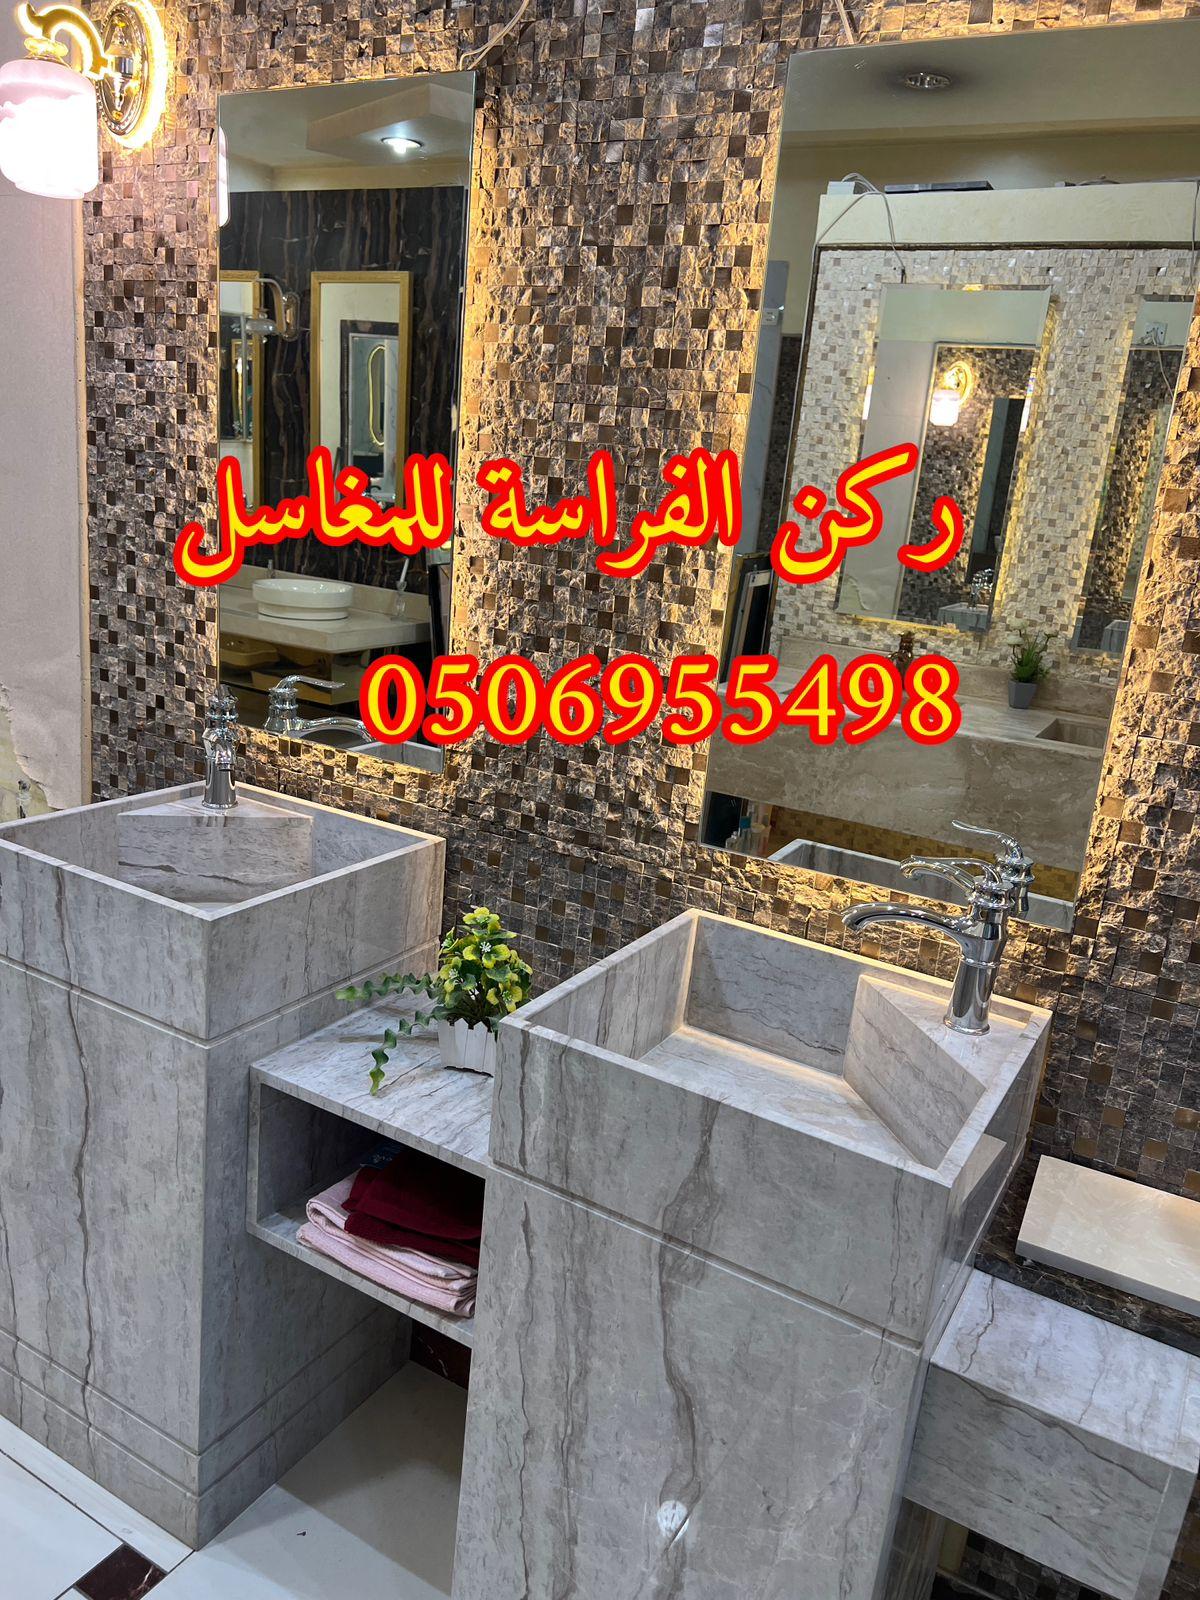 تفصيل احواض مغاسل رخام في الرياض,0506955498 851250385